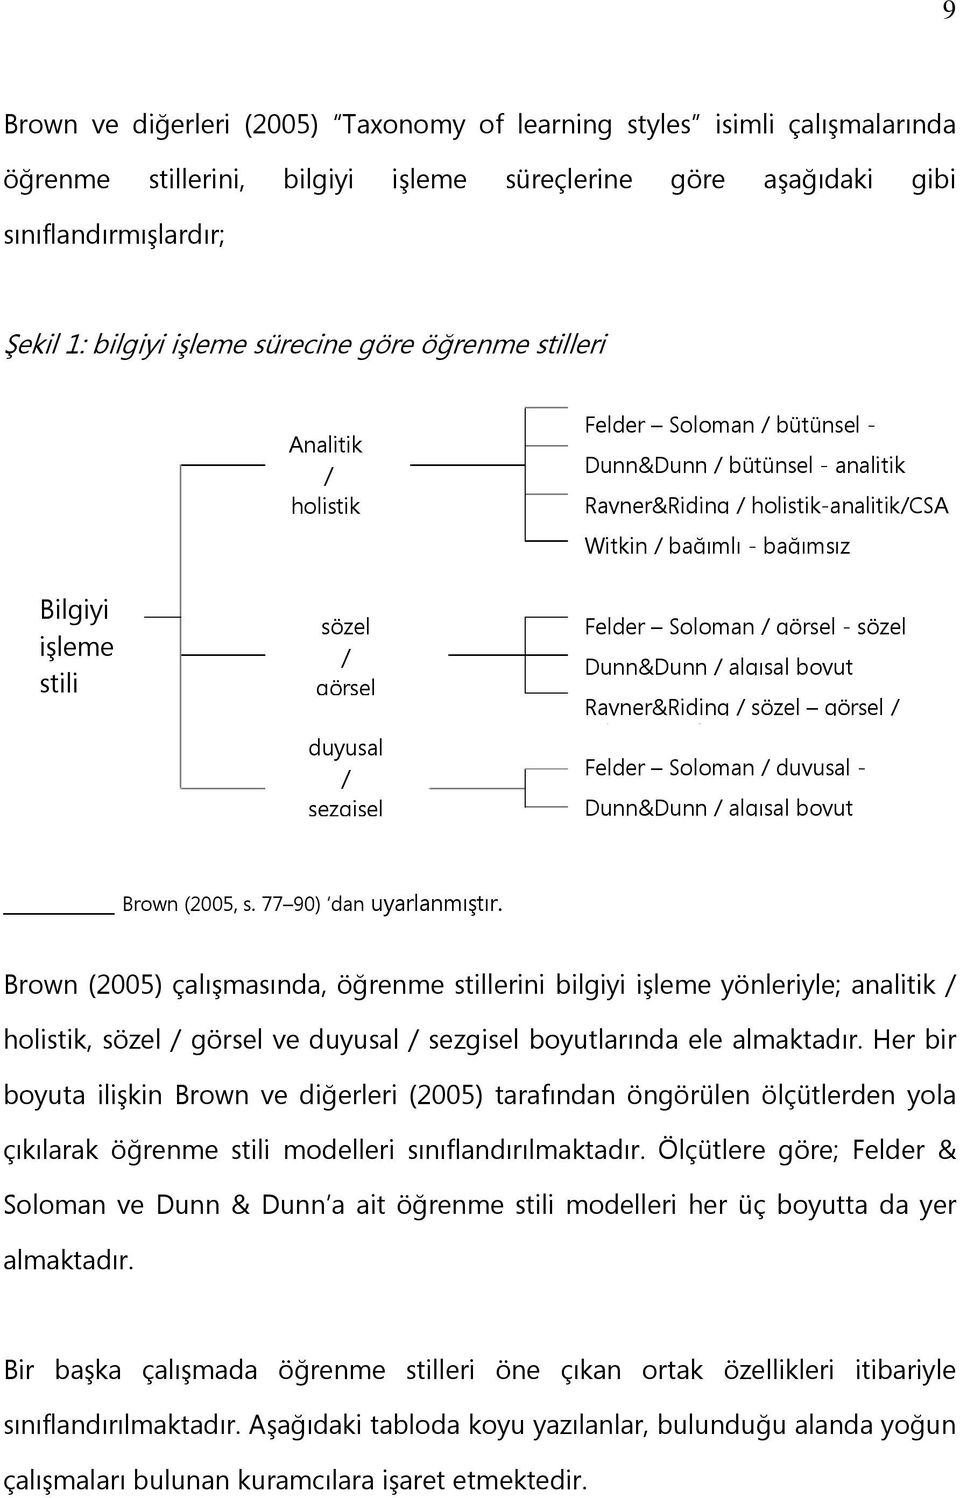 Witkin / bağımlı - bağımsız Felder Soloman / görsel - sözel Dunn&Dunn / algısal boyut Rayner&Riding / sözel görsel / Felder Soloman / duyusal - Dunn&Dunn / algısal boyut Brown (2005, s.